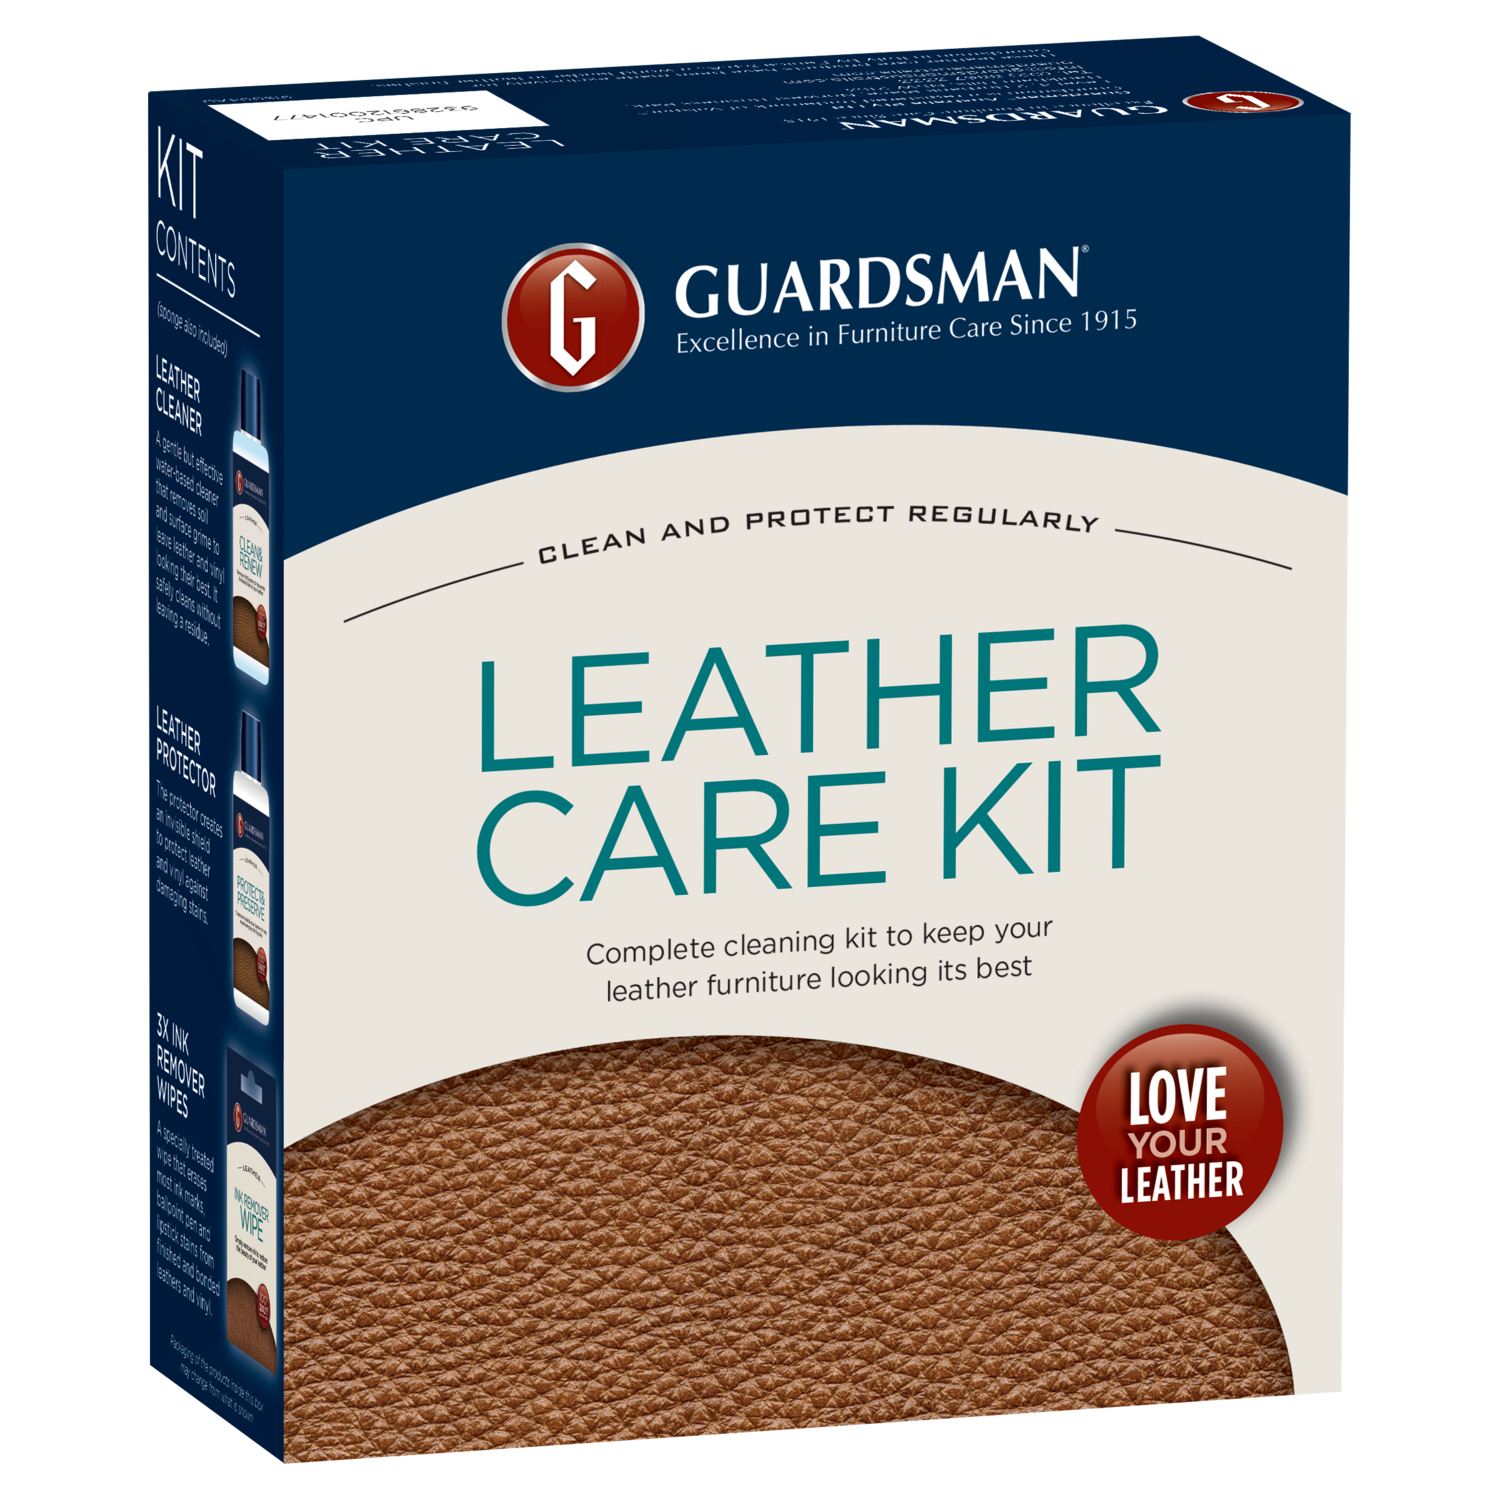 Guardsman Leather Care Kit